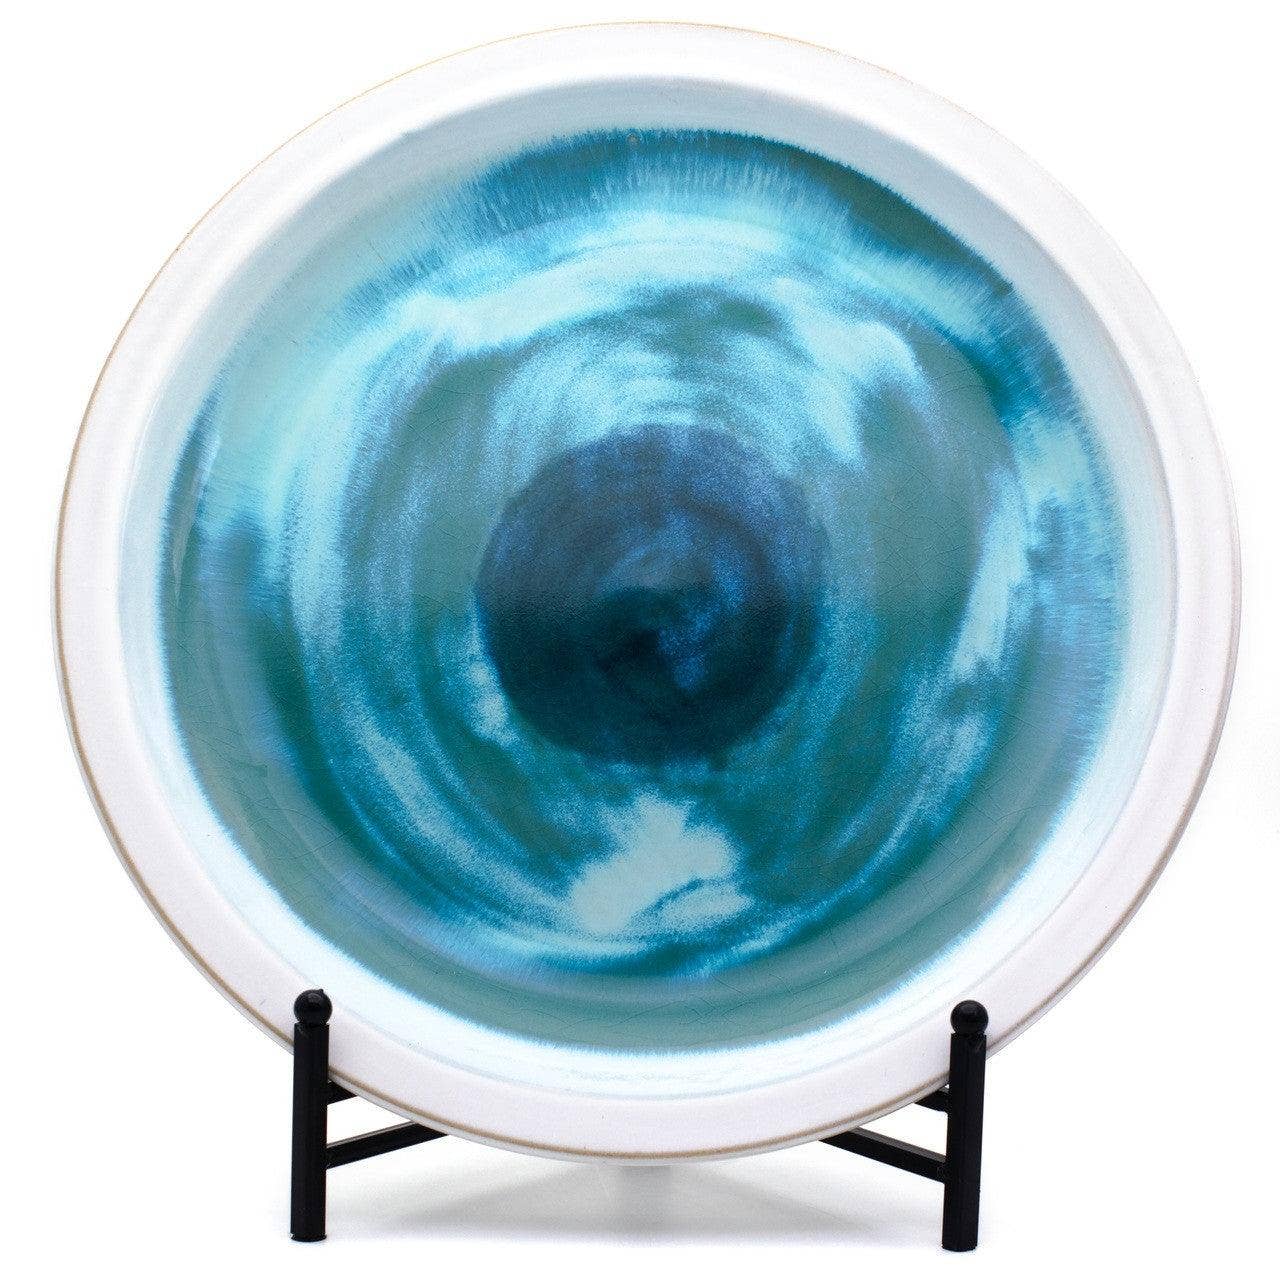 Grotto Aqua Decorative Platter